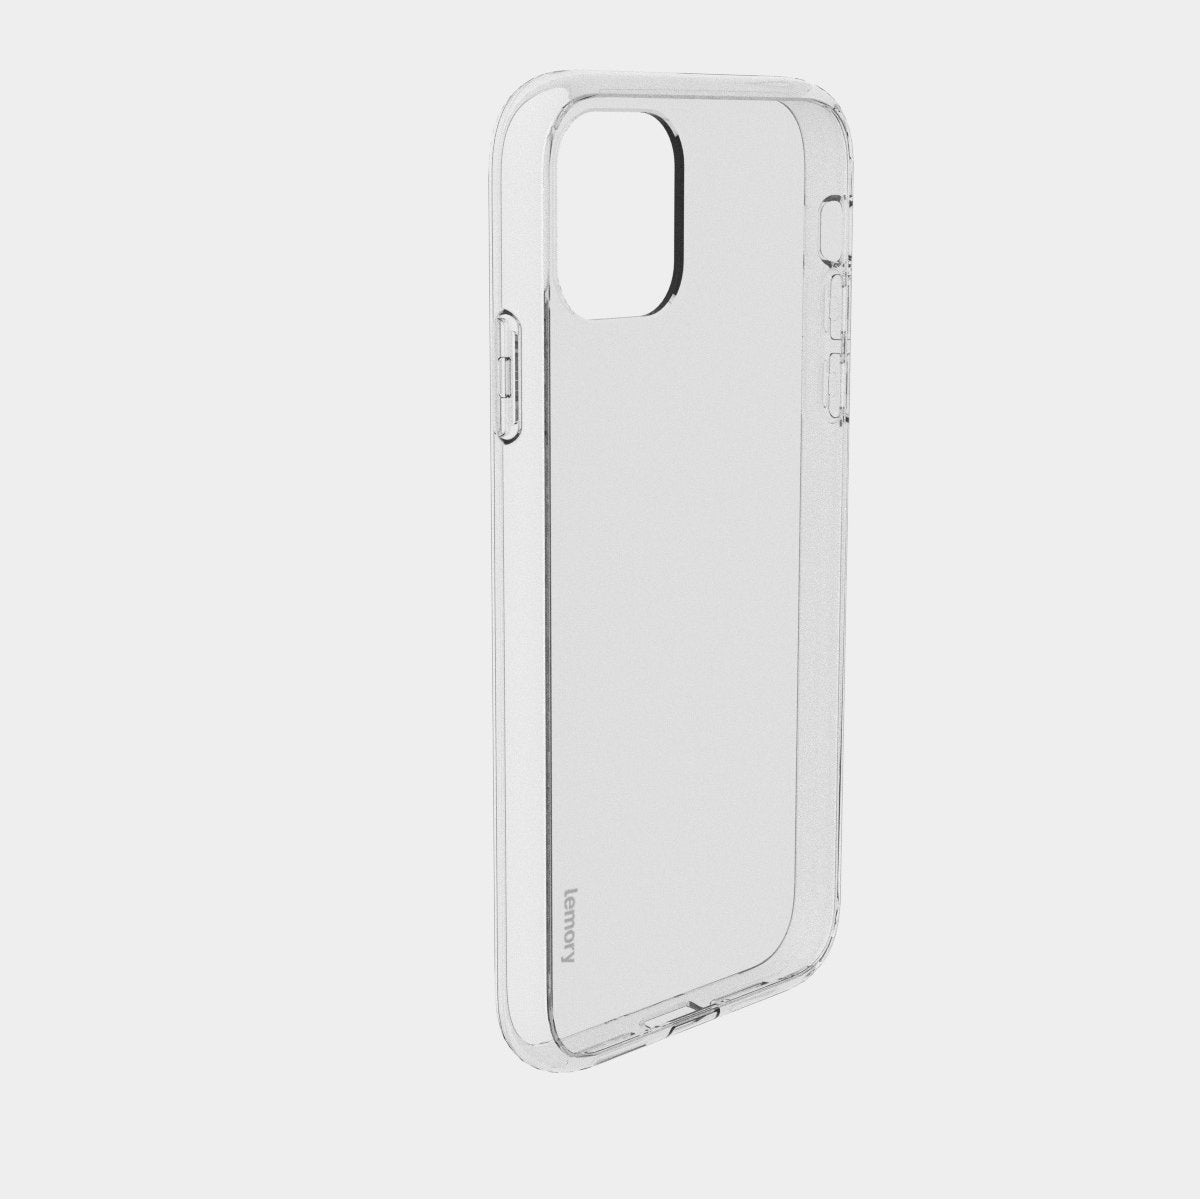 Prémiový silikonový kryt Lemory Clear na mobil Apple iPhone 11 - čirý - AKCE (Prémiový silikonový kryt, pouzdro, obal Lemory Clear na mobilní telefon Apple iPhone 11 - čirý)